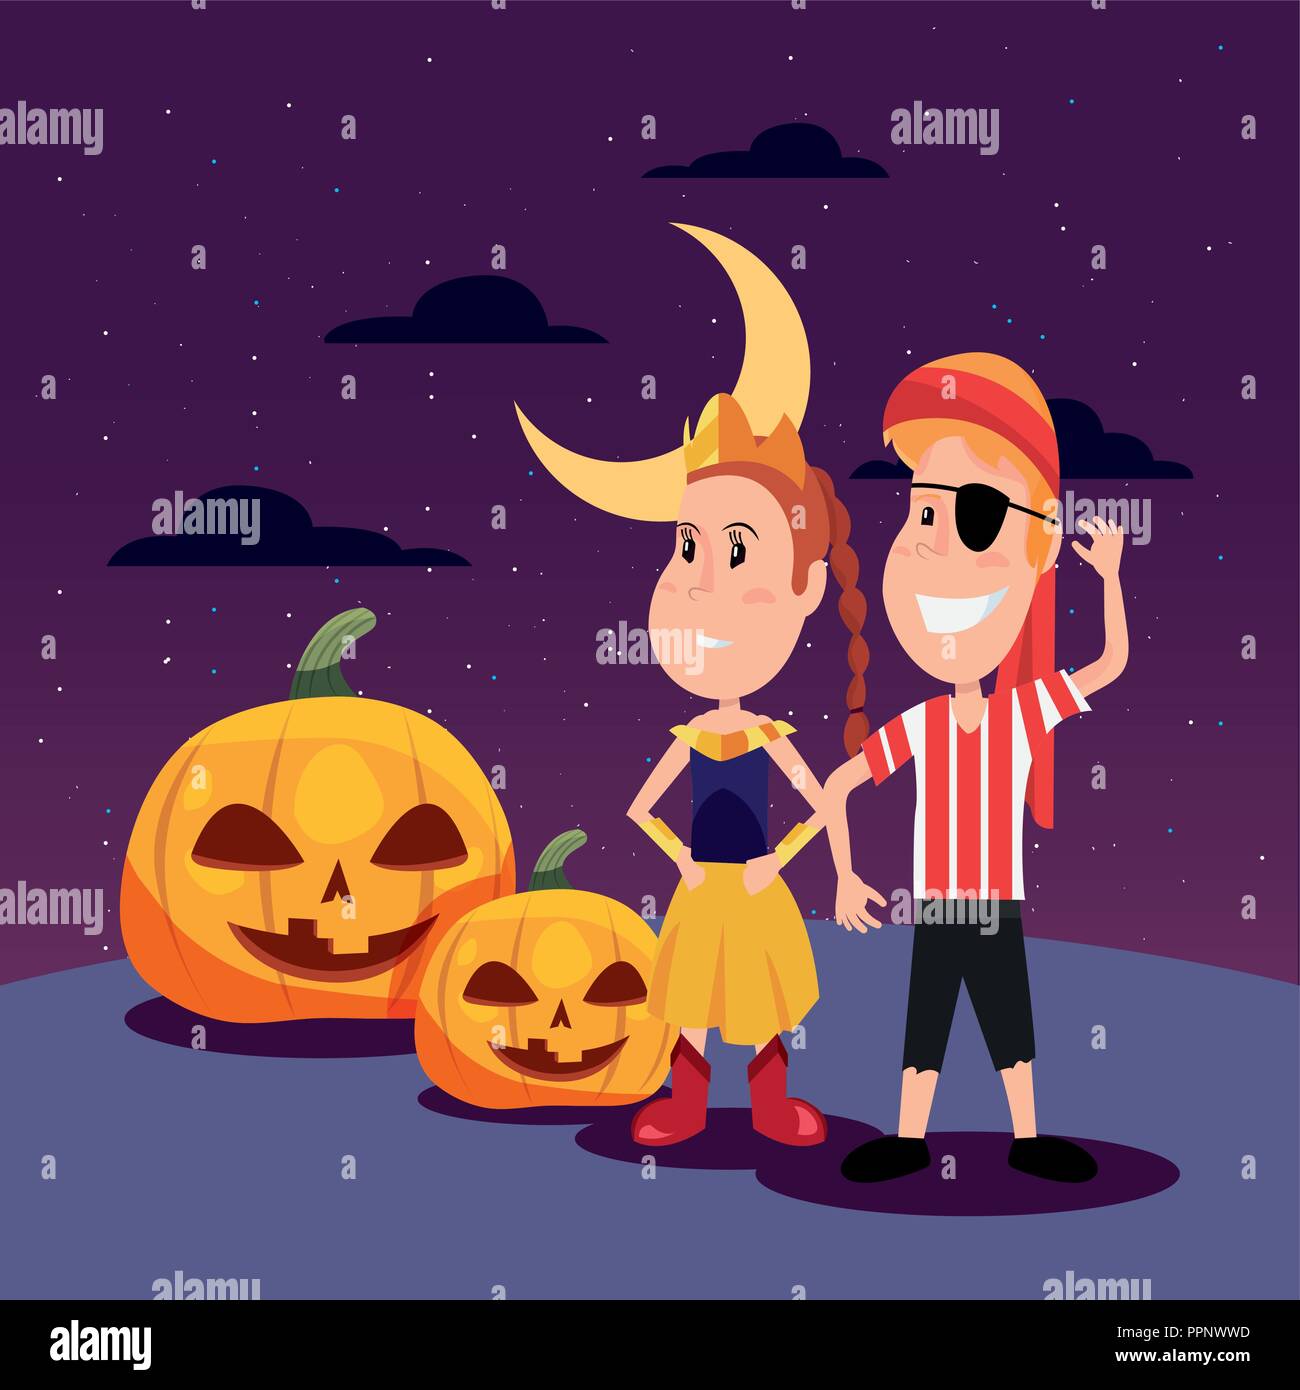 Halloween Feier Mond Nacht Prinzessin Und Pirat Junge Mit Kurbis Vector Illustration Stock Vektorgrafik Alamy